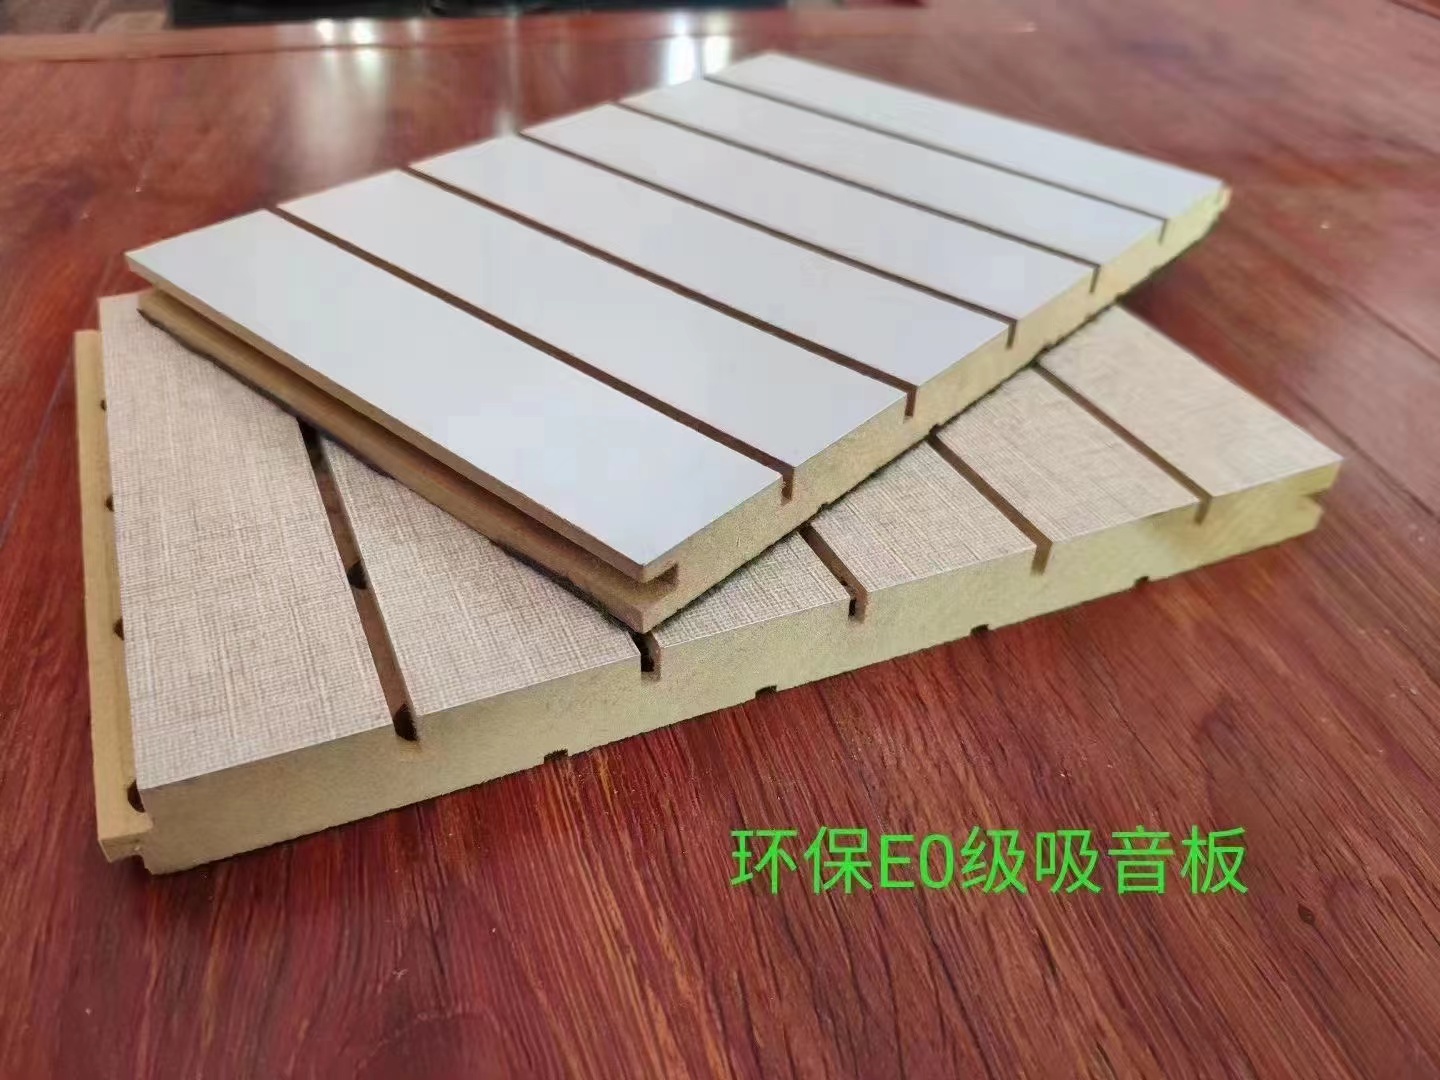 环保木质吸音板-环保EO级实木吸音板价格、促销价格、产地货源